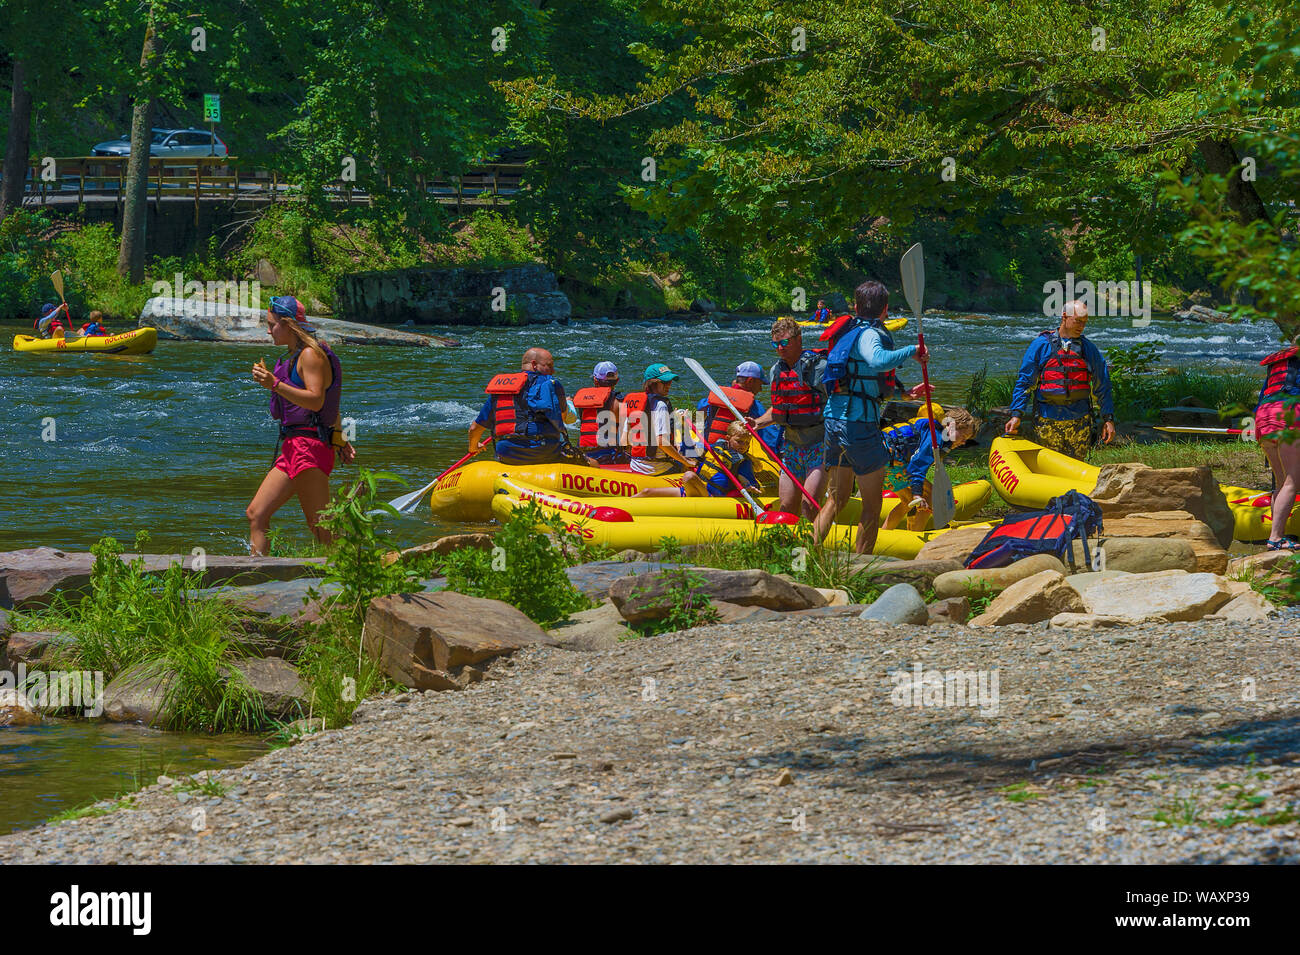 Durham, Caroline du Nord, USA - 3 août 2019 : les chevrons le long de la berge de la rivière Nantahala au Centre de plein air de Nantahala. Banque D'Images